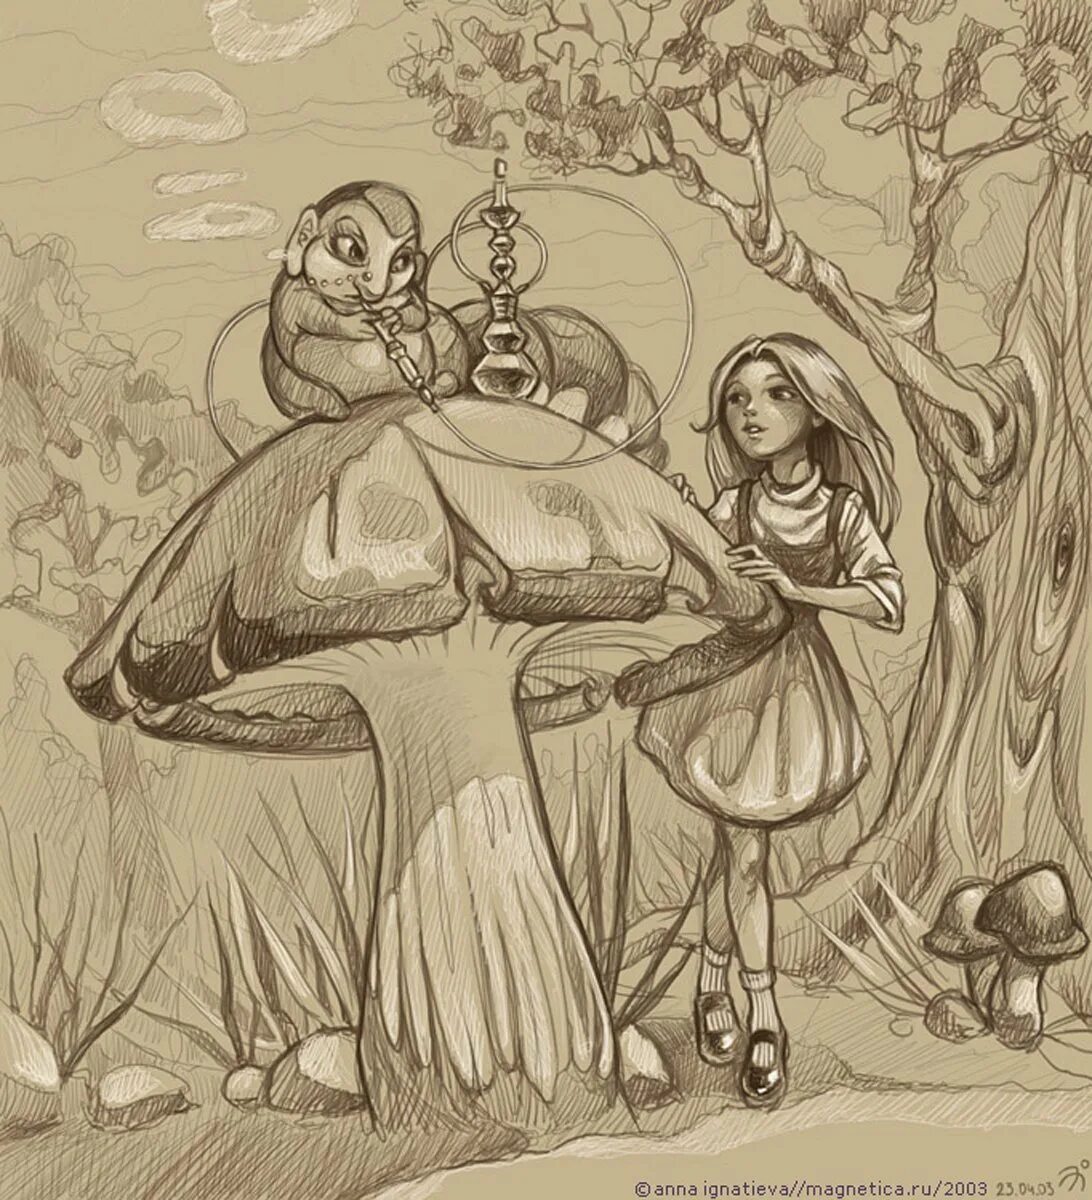 Нарисовать сказку алиса в стране чудес. Ллюстрация к сказке "Алиса в стране чудес". Алиса в стране чудес рисунок. Иллюстрация к сказке Алиса в стране чудес рисунки. Рисунок к сказке Алиса в стране чудес.